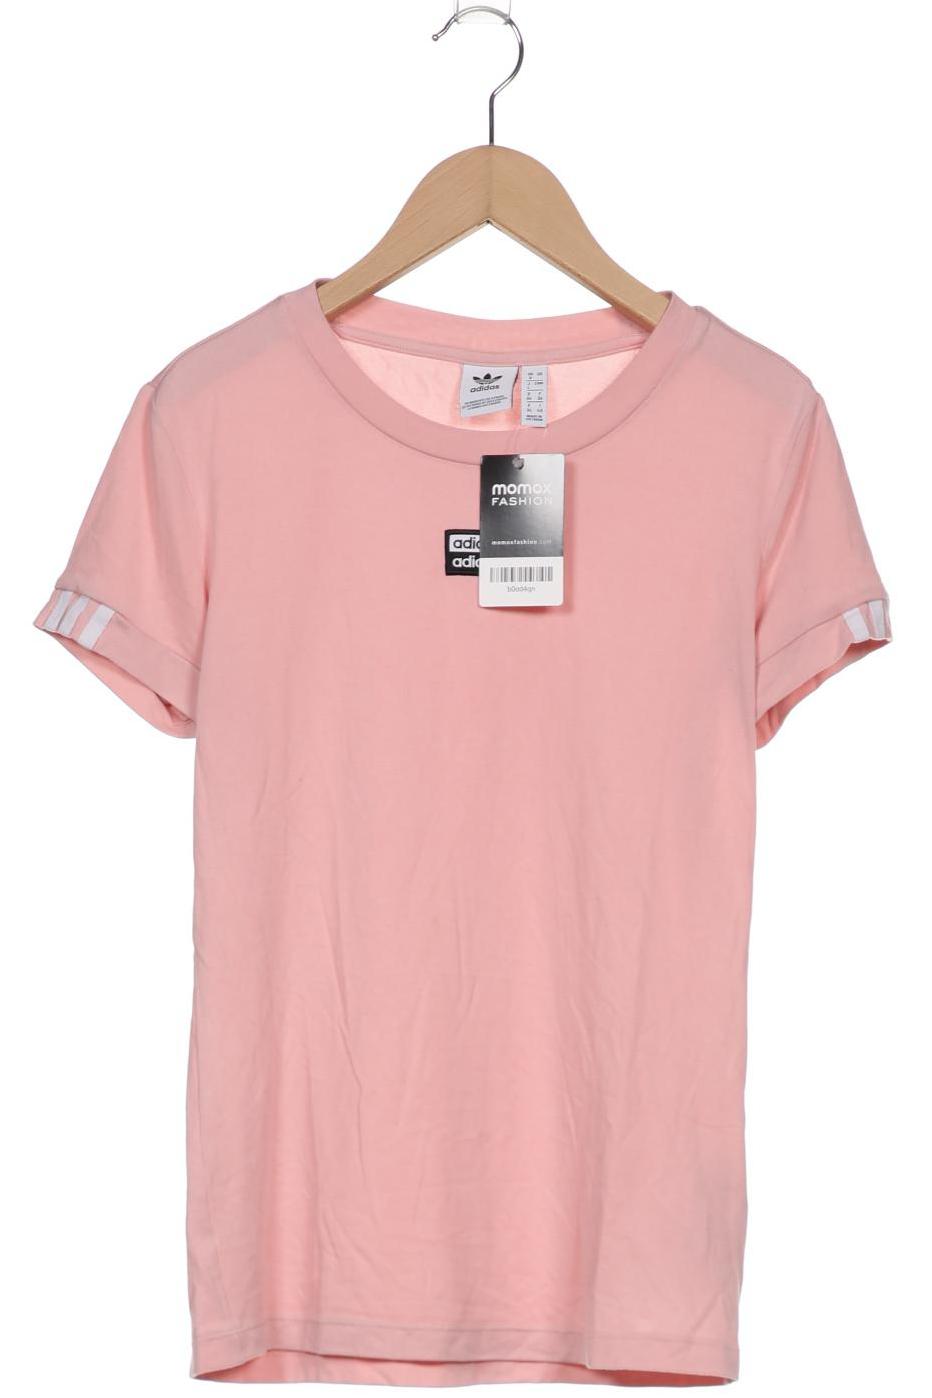 adidas Originals Damen T-Shirt, pink von adidas Originals